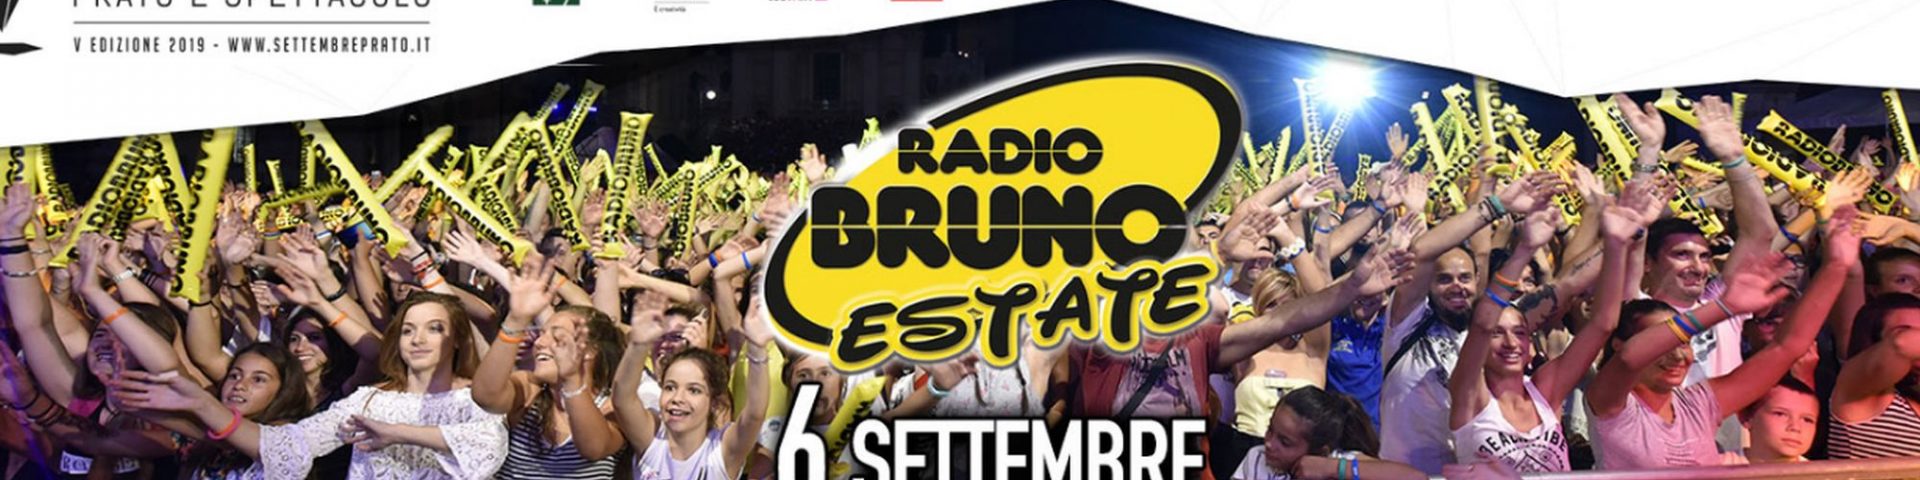 Radio Bruno Estate 2019 a Prato: svelato il cast della finale